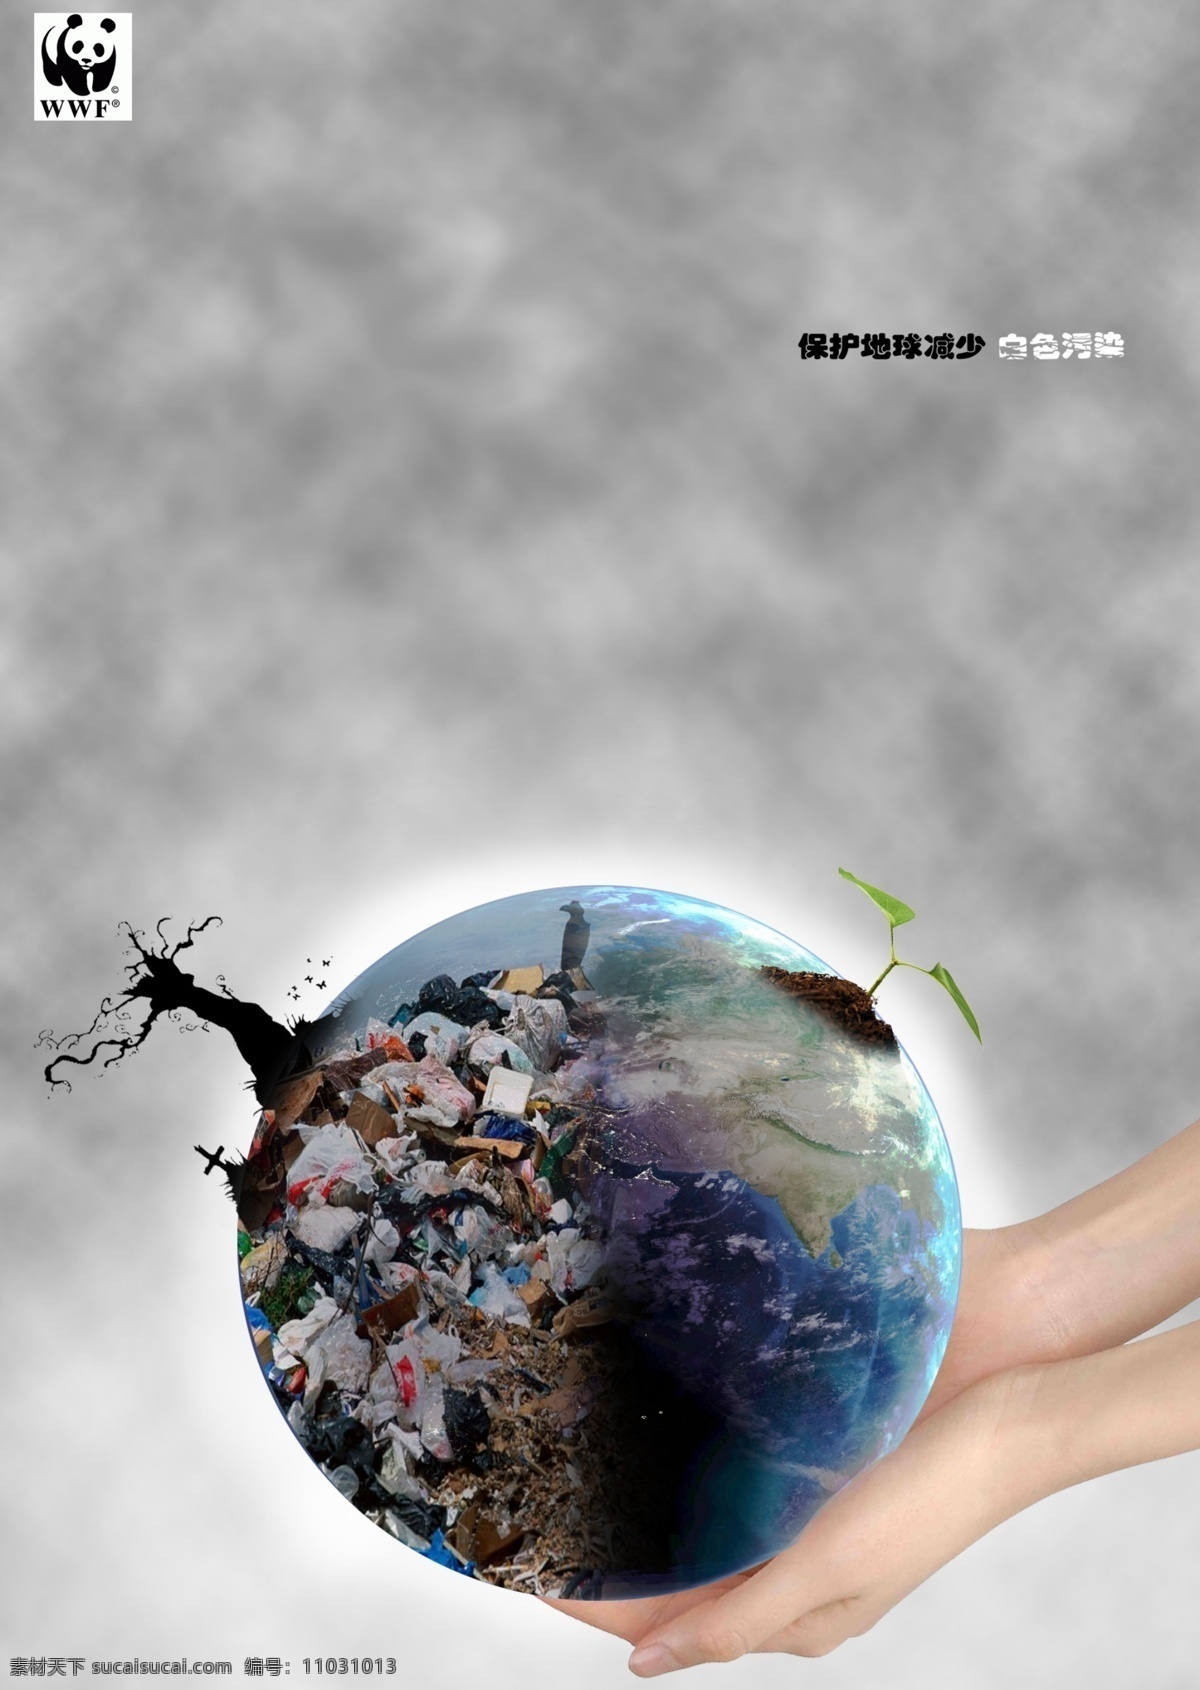 环保宣传海报 地球 环境 白色污染 双手 垃圾 保护环境海报 保护地球海报 广告设计模板 源文件